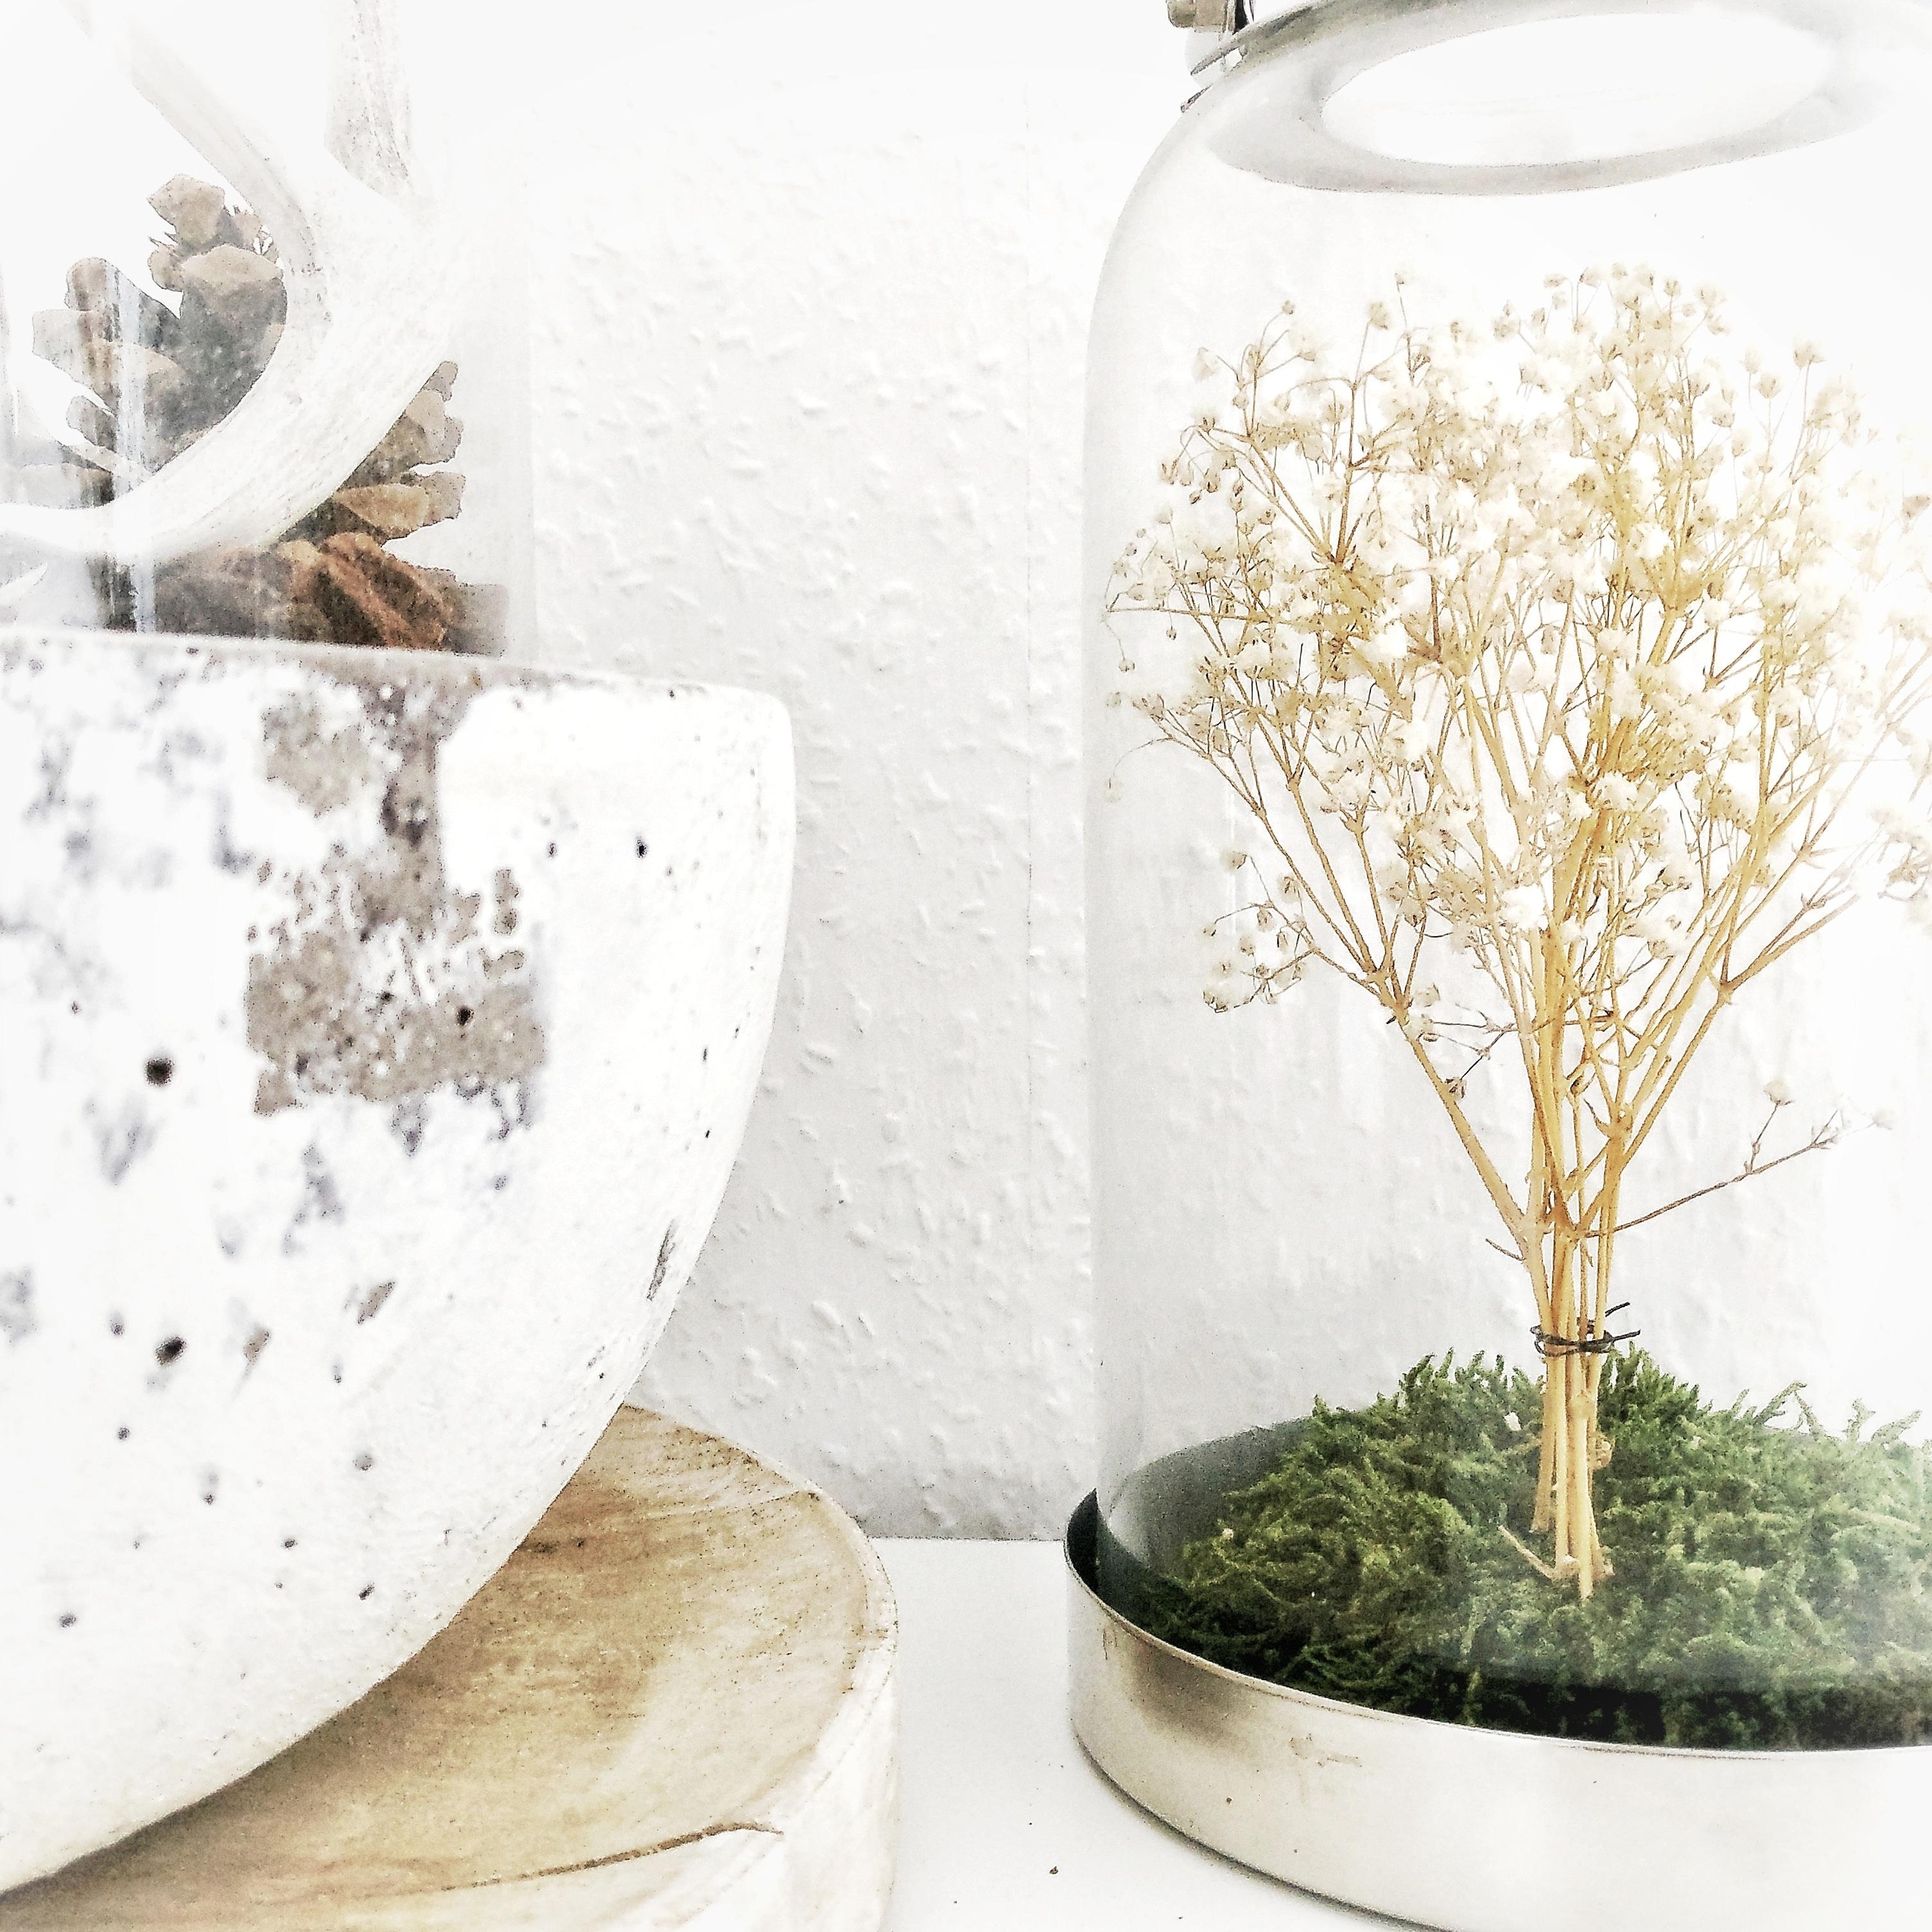 Ein kleines DIY aus Schleierkraut - mein kleiner 'indoor-Baum'

#diy #decor #schleierkraut 